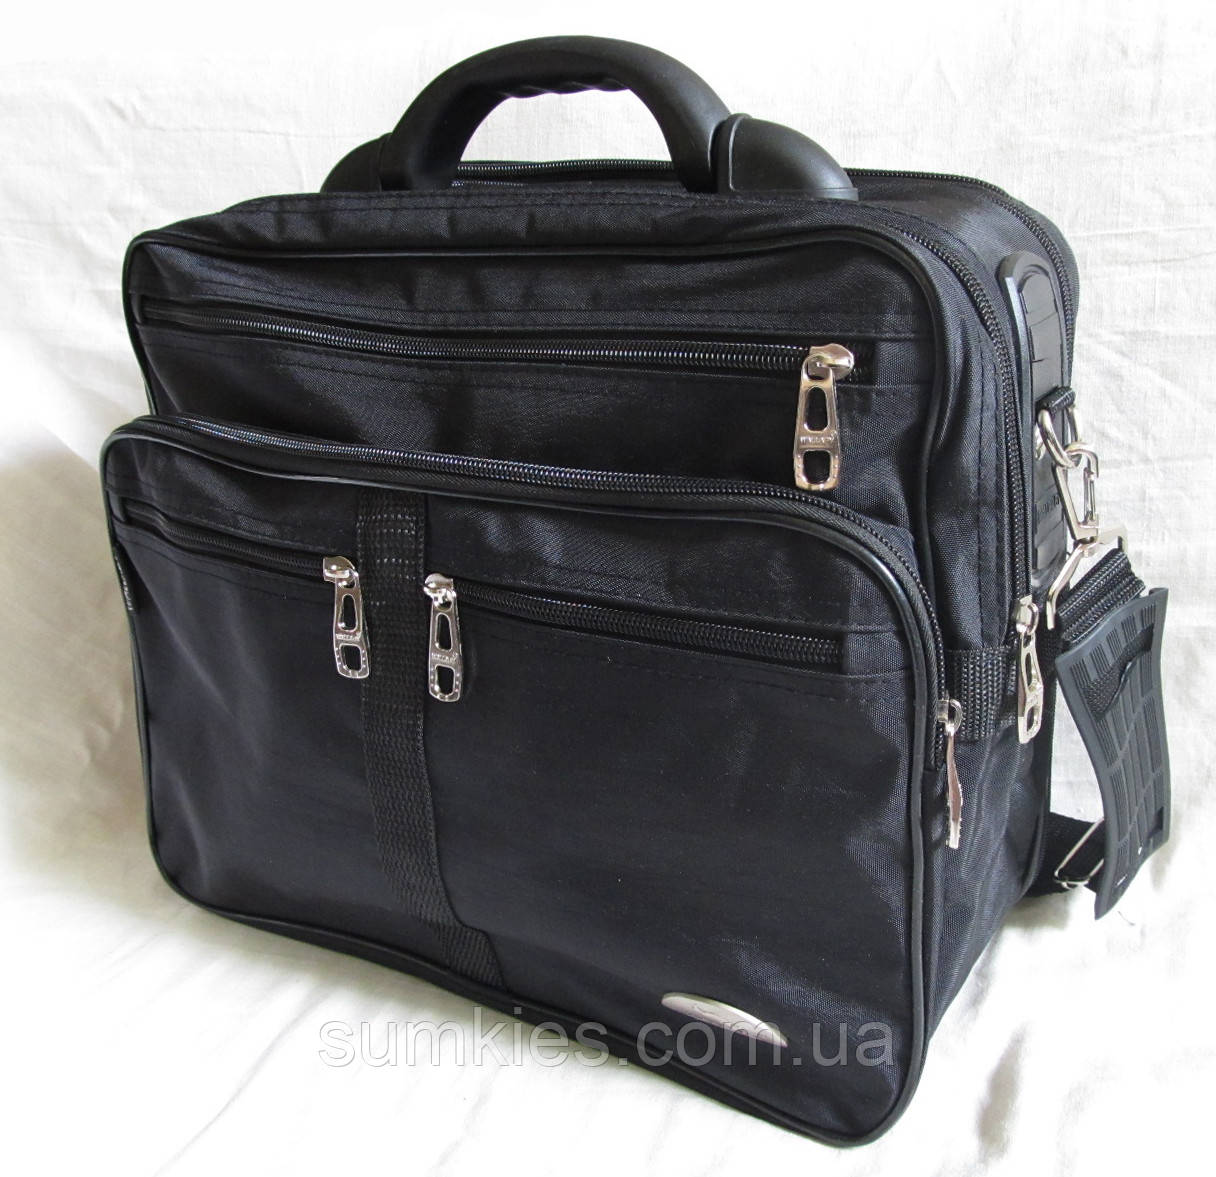 Чоловіча сумка es25275 чорна полукаркасна з розширенням через плече портфель А4 35х29х20+3см